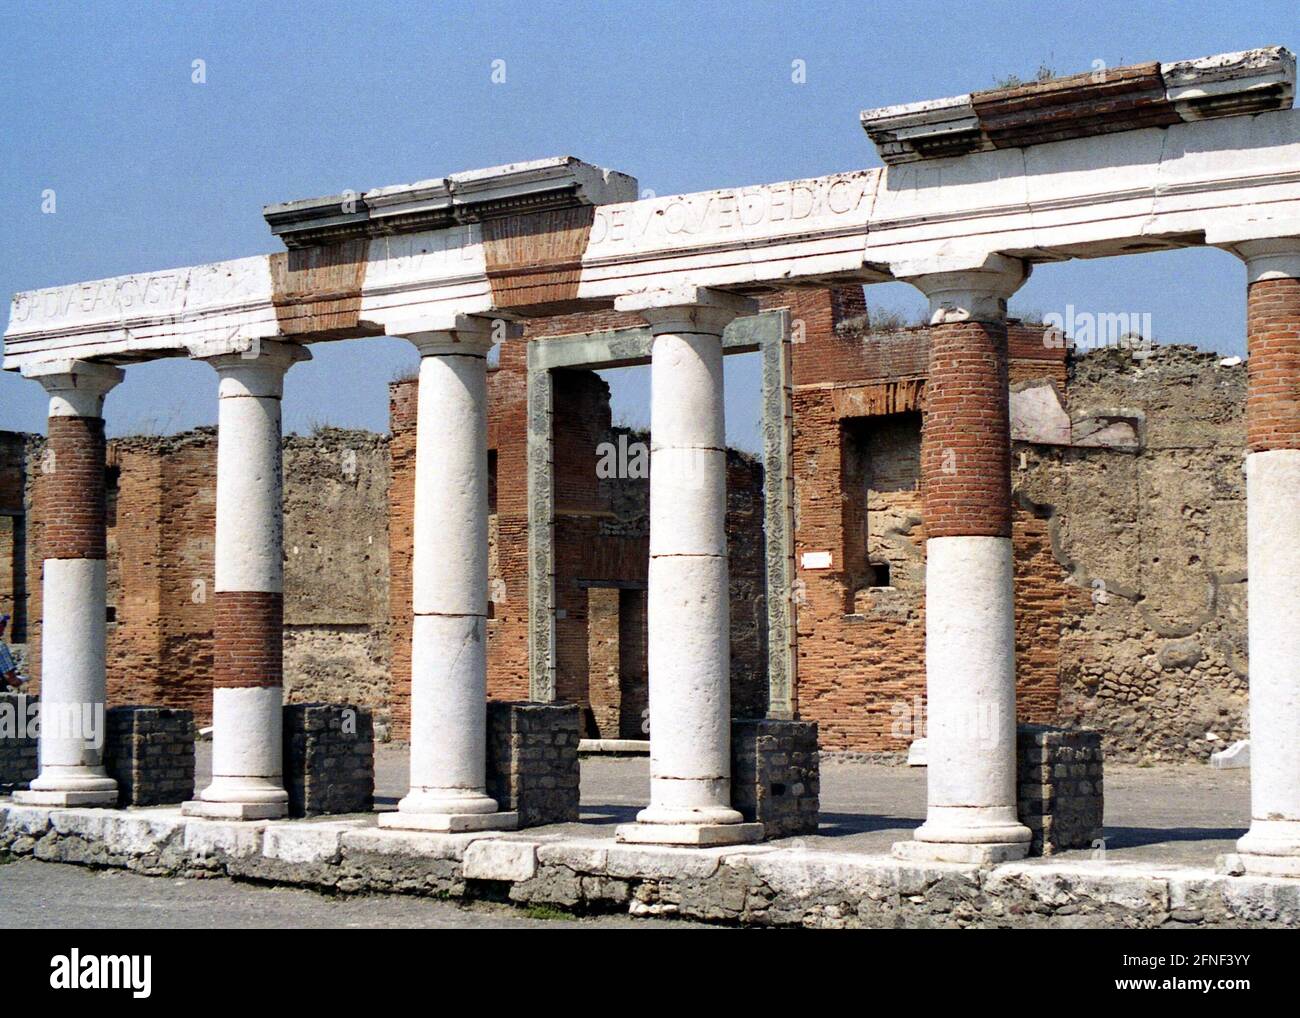 Die Installationen von Pompeji werden mit großer Sorgfalt und Geschick wieder aufgedeckt. [Automatisierte Übersetzung] Stockfoto